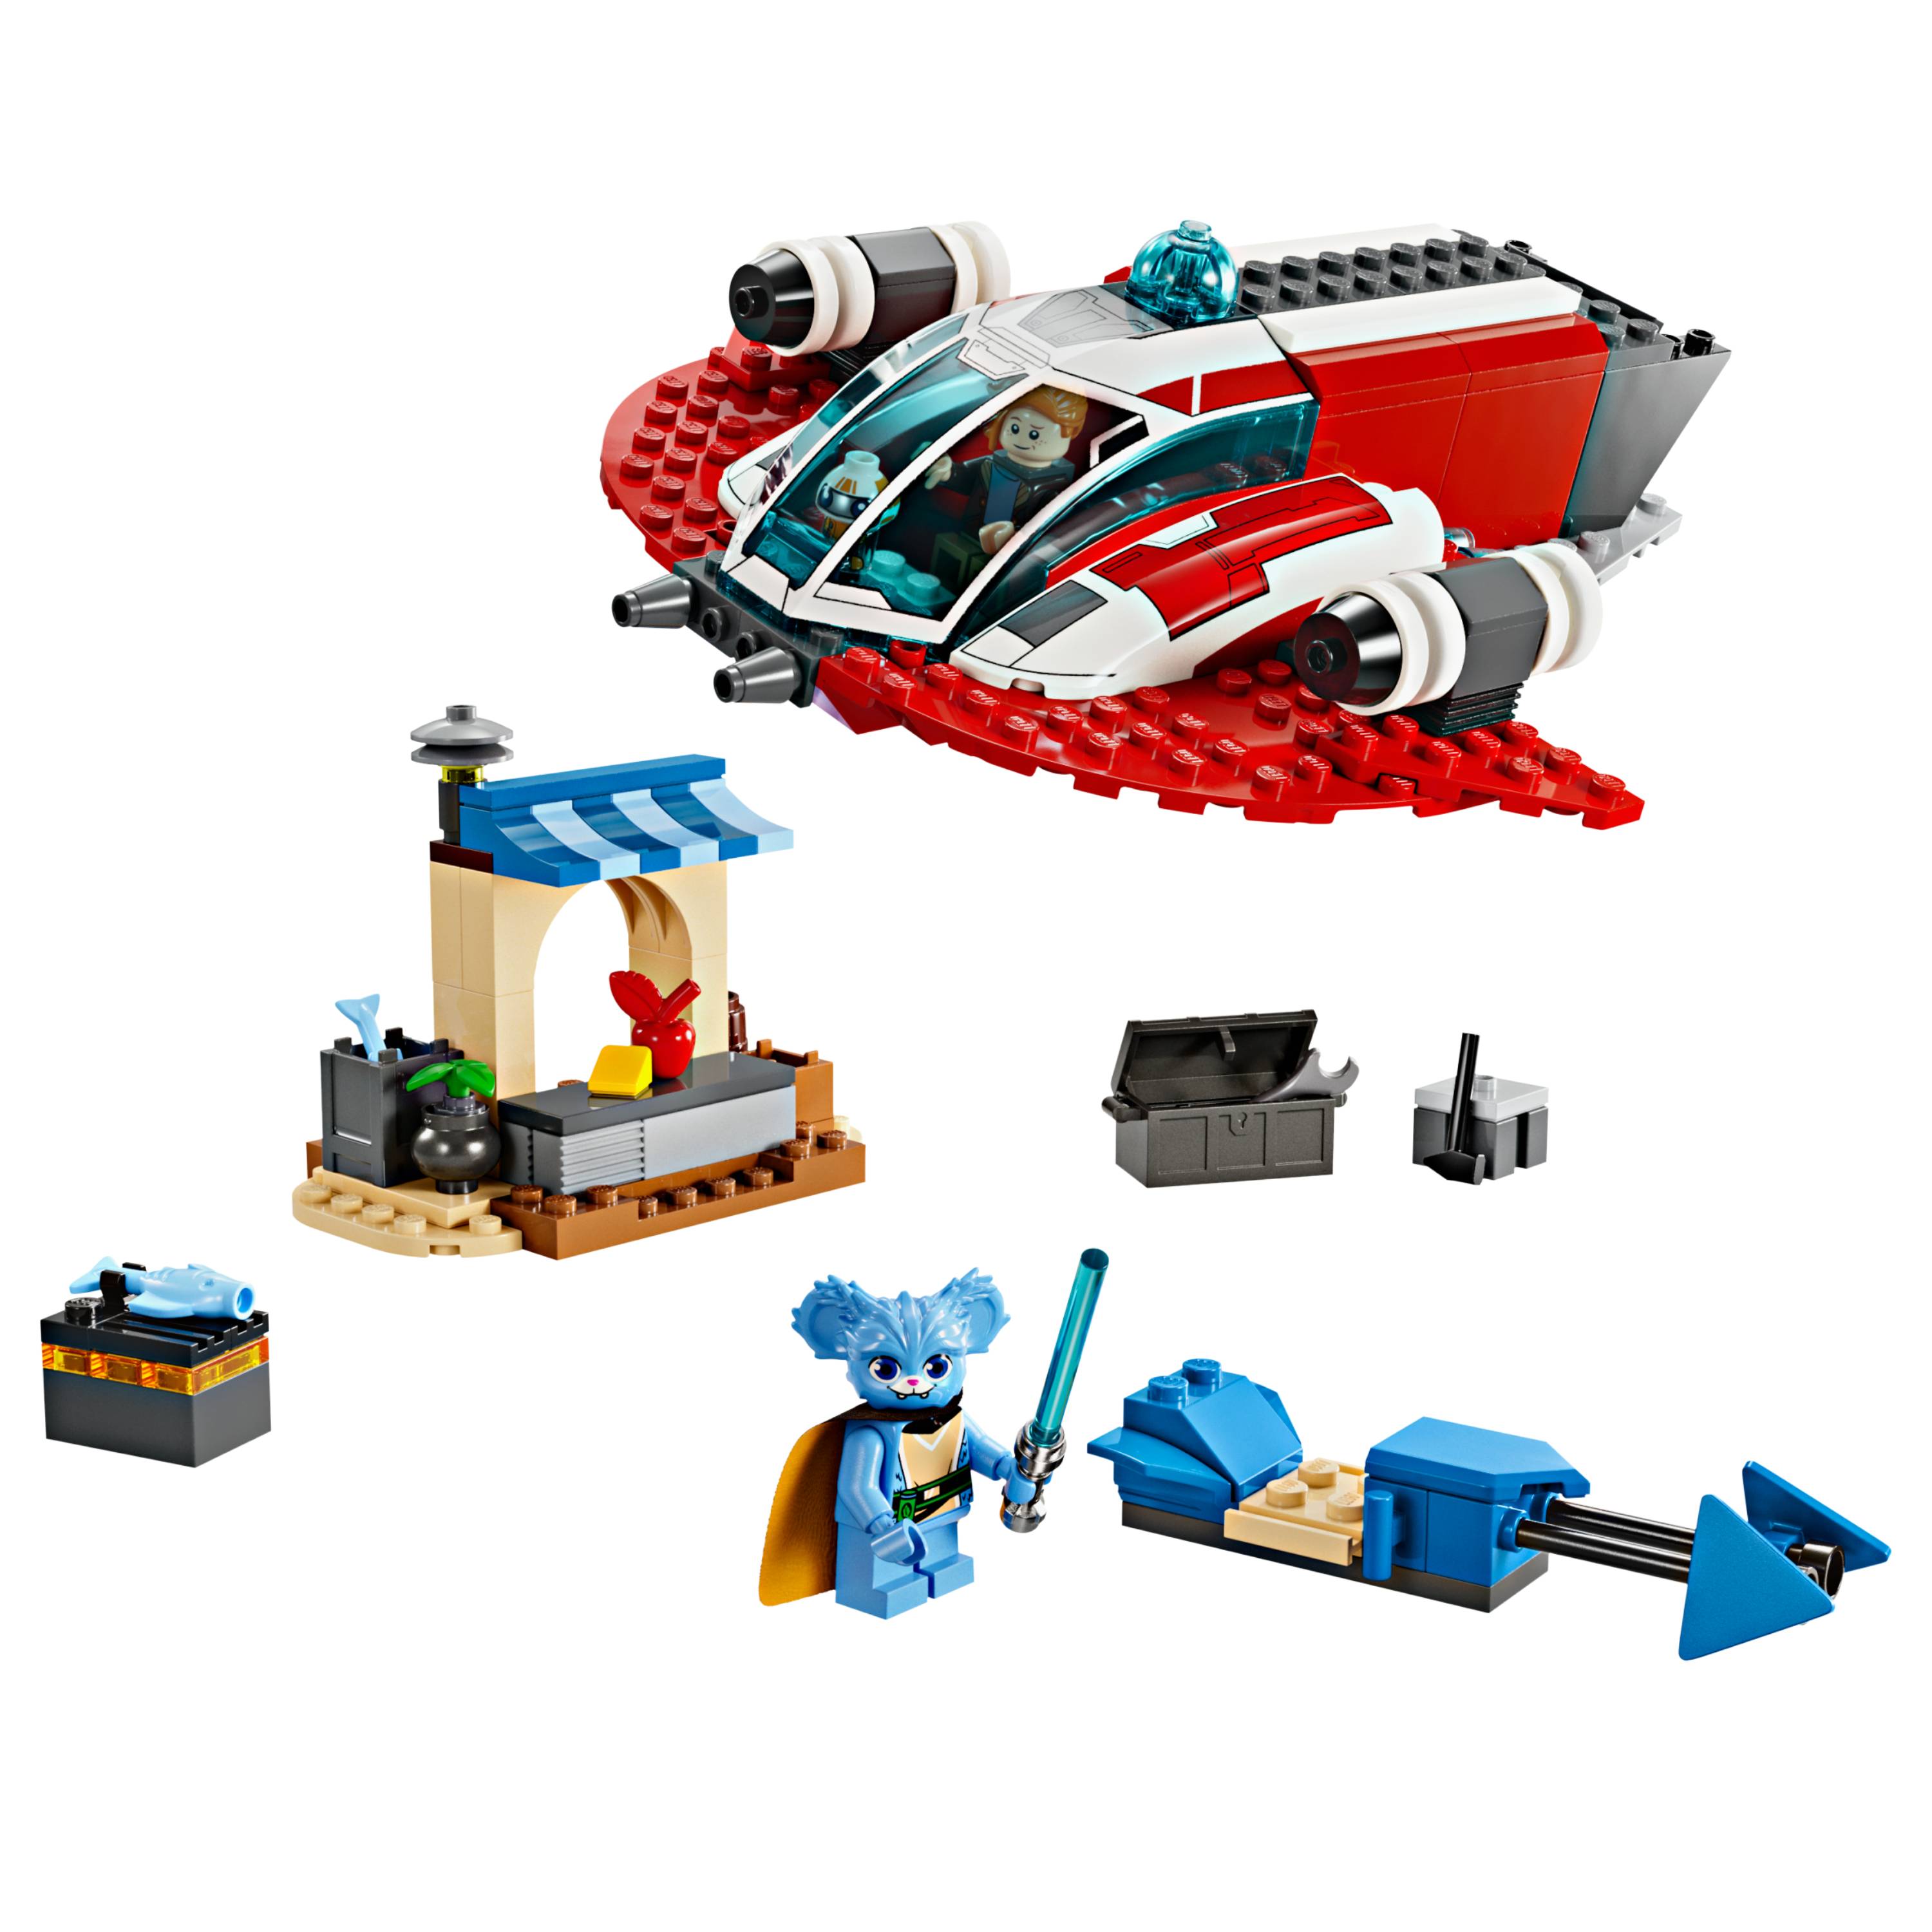 Naves - Todos os Produtos  Loja oficial LEGO® BR - Lego